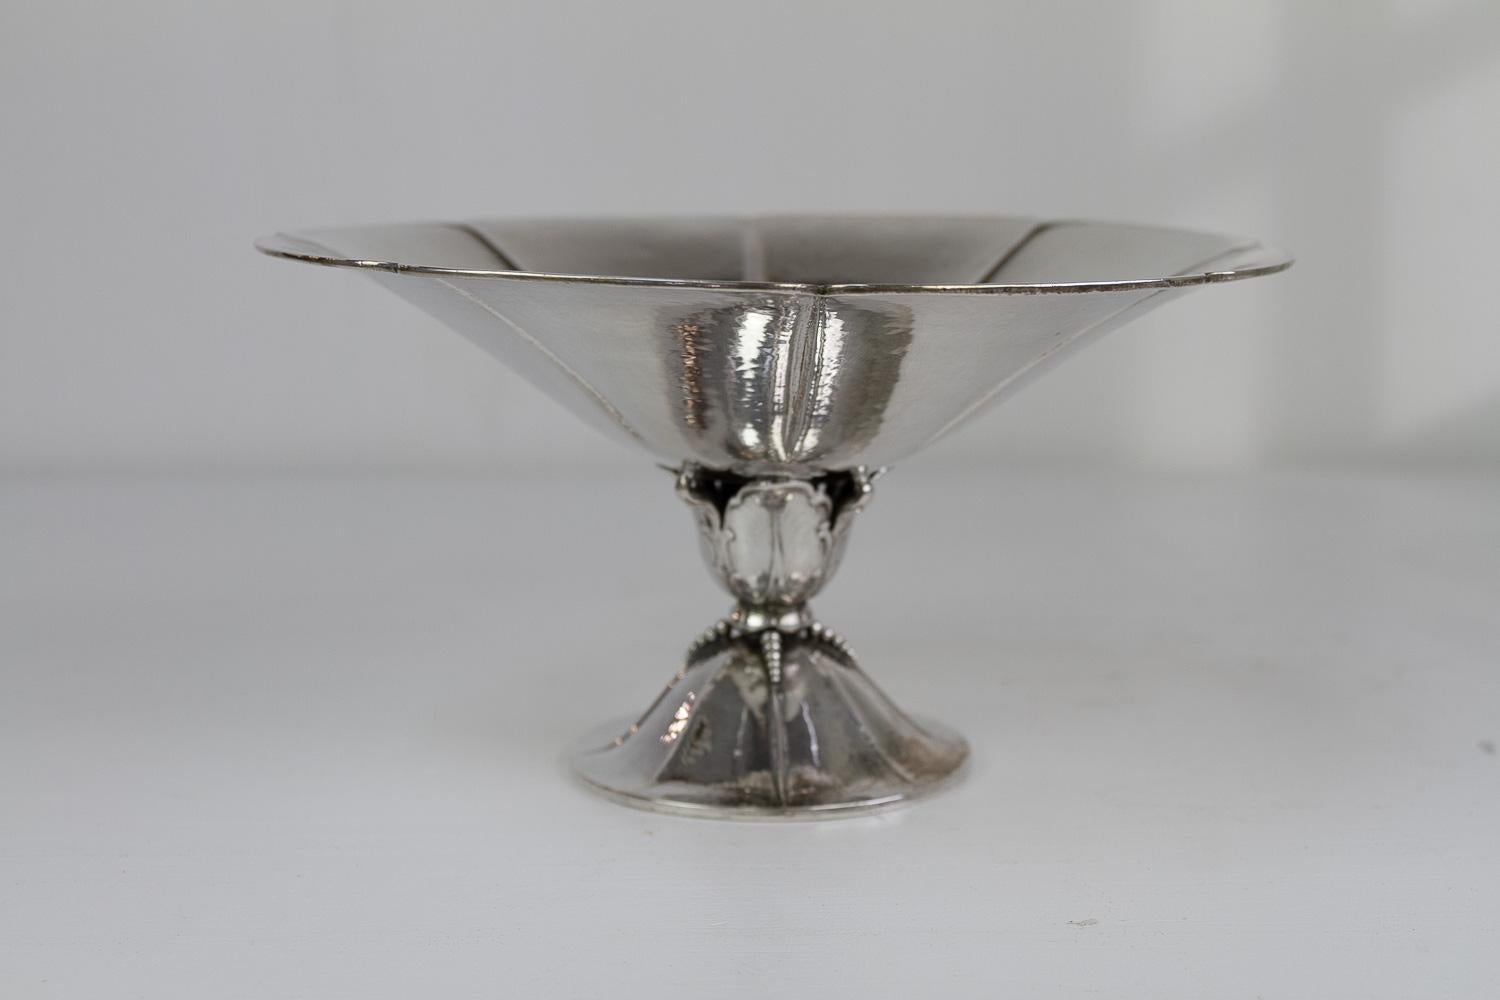 Antike dänische Silberschale, 1920er Jahre, antik.

Elegante Schale aus gehämmertem Silber, hergestellt in Dänemark in den 1920er Jahren. Ursprünglich wurde eine Zucker- oder Bonbonschale verwendet.

Gestempelt mit drei Türmen (hergestellt in